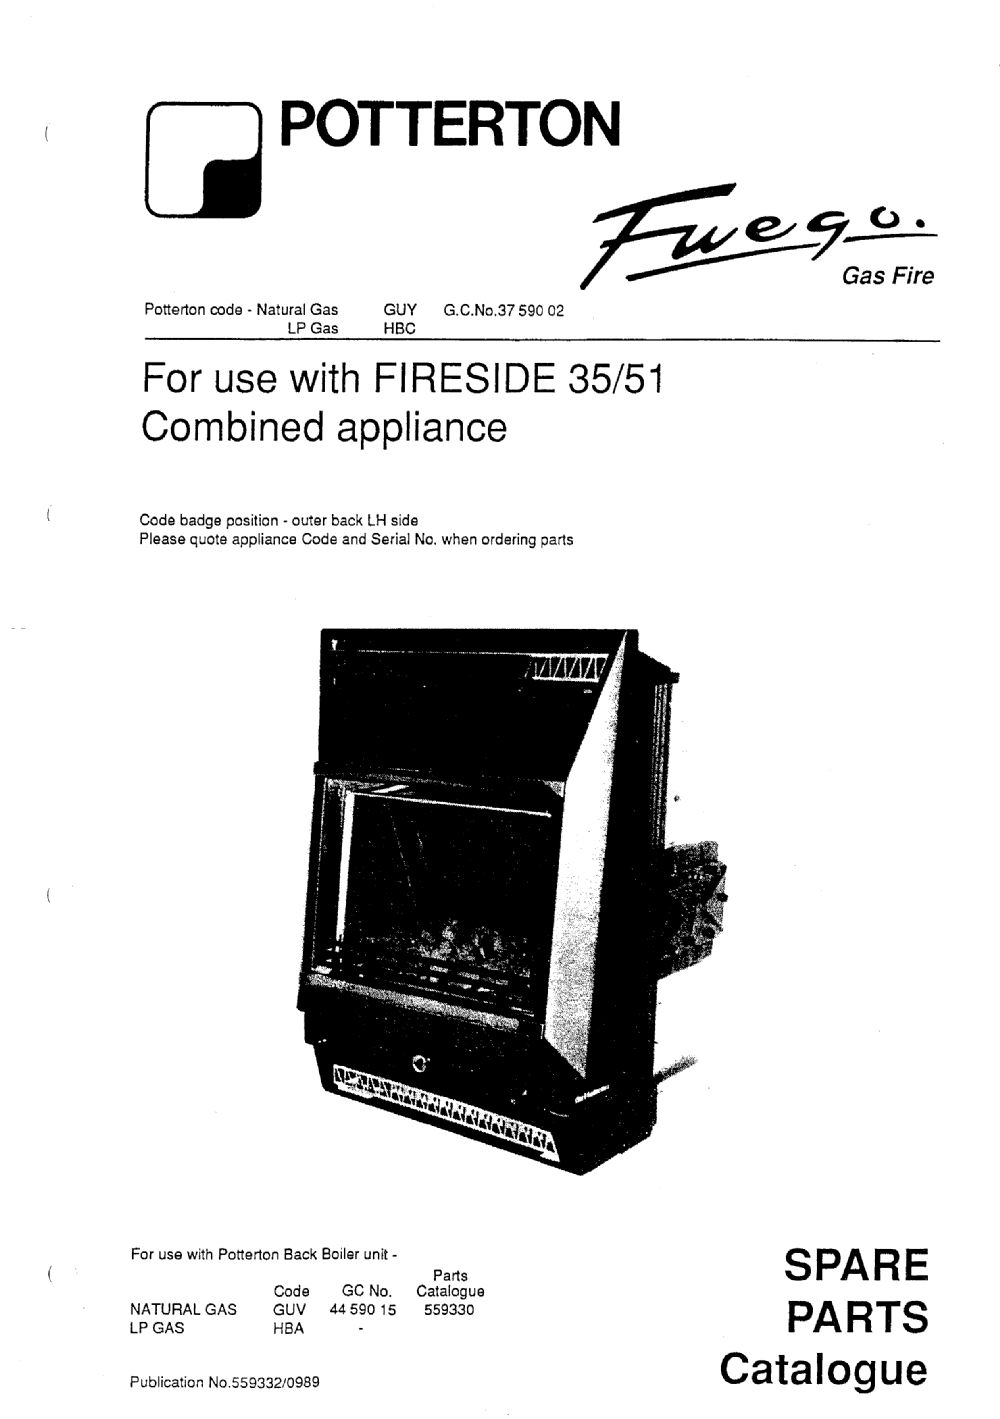 Firesize 35/51 Fuego LPG Fire - appliance_4243